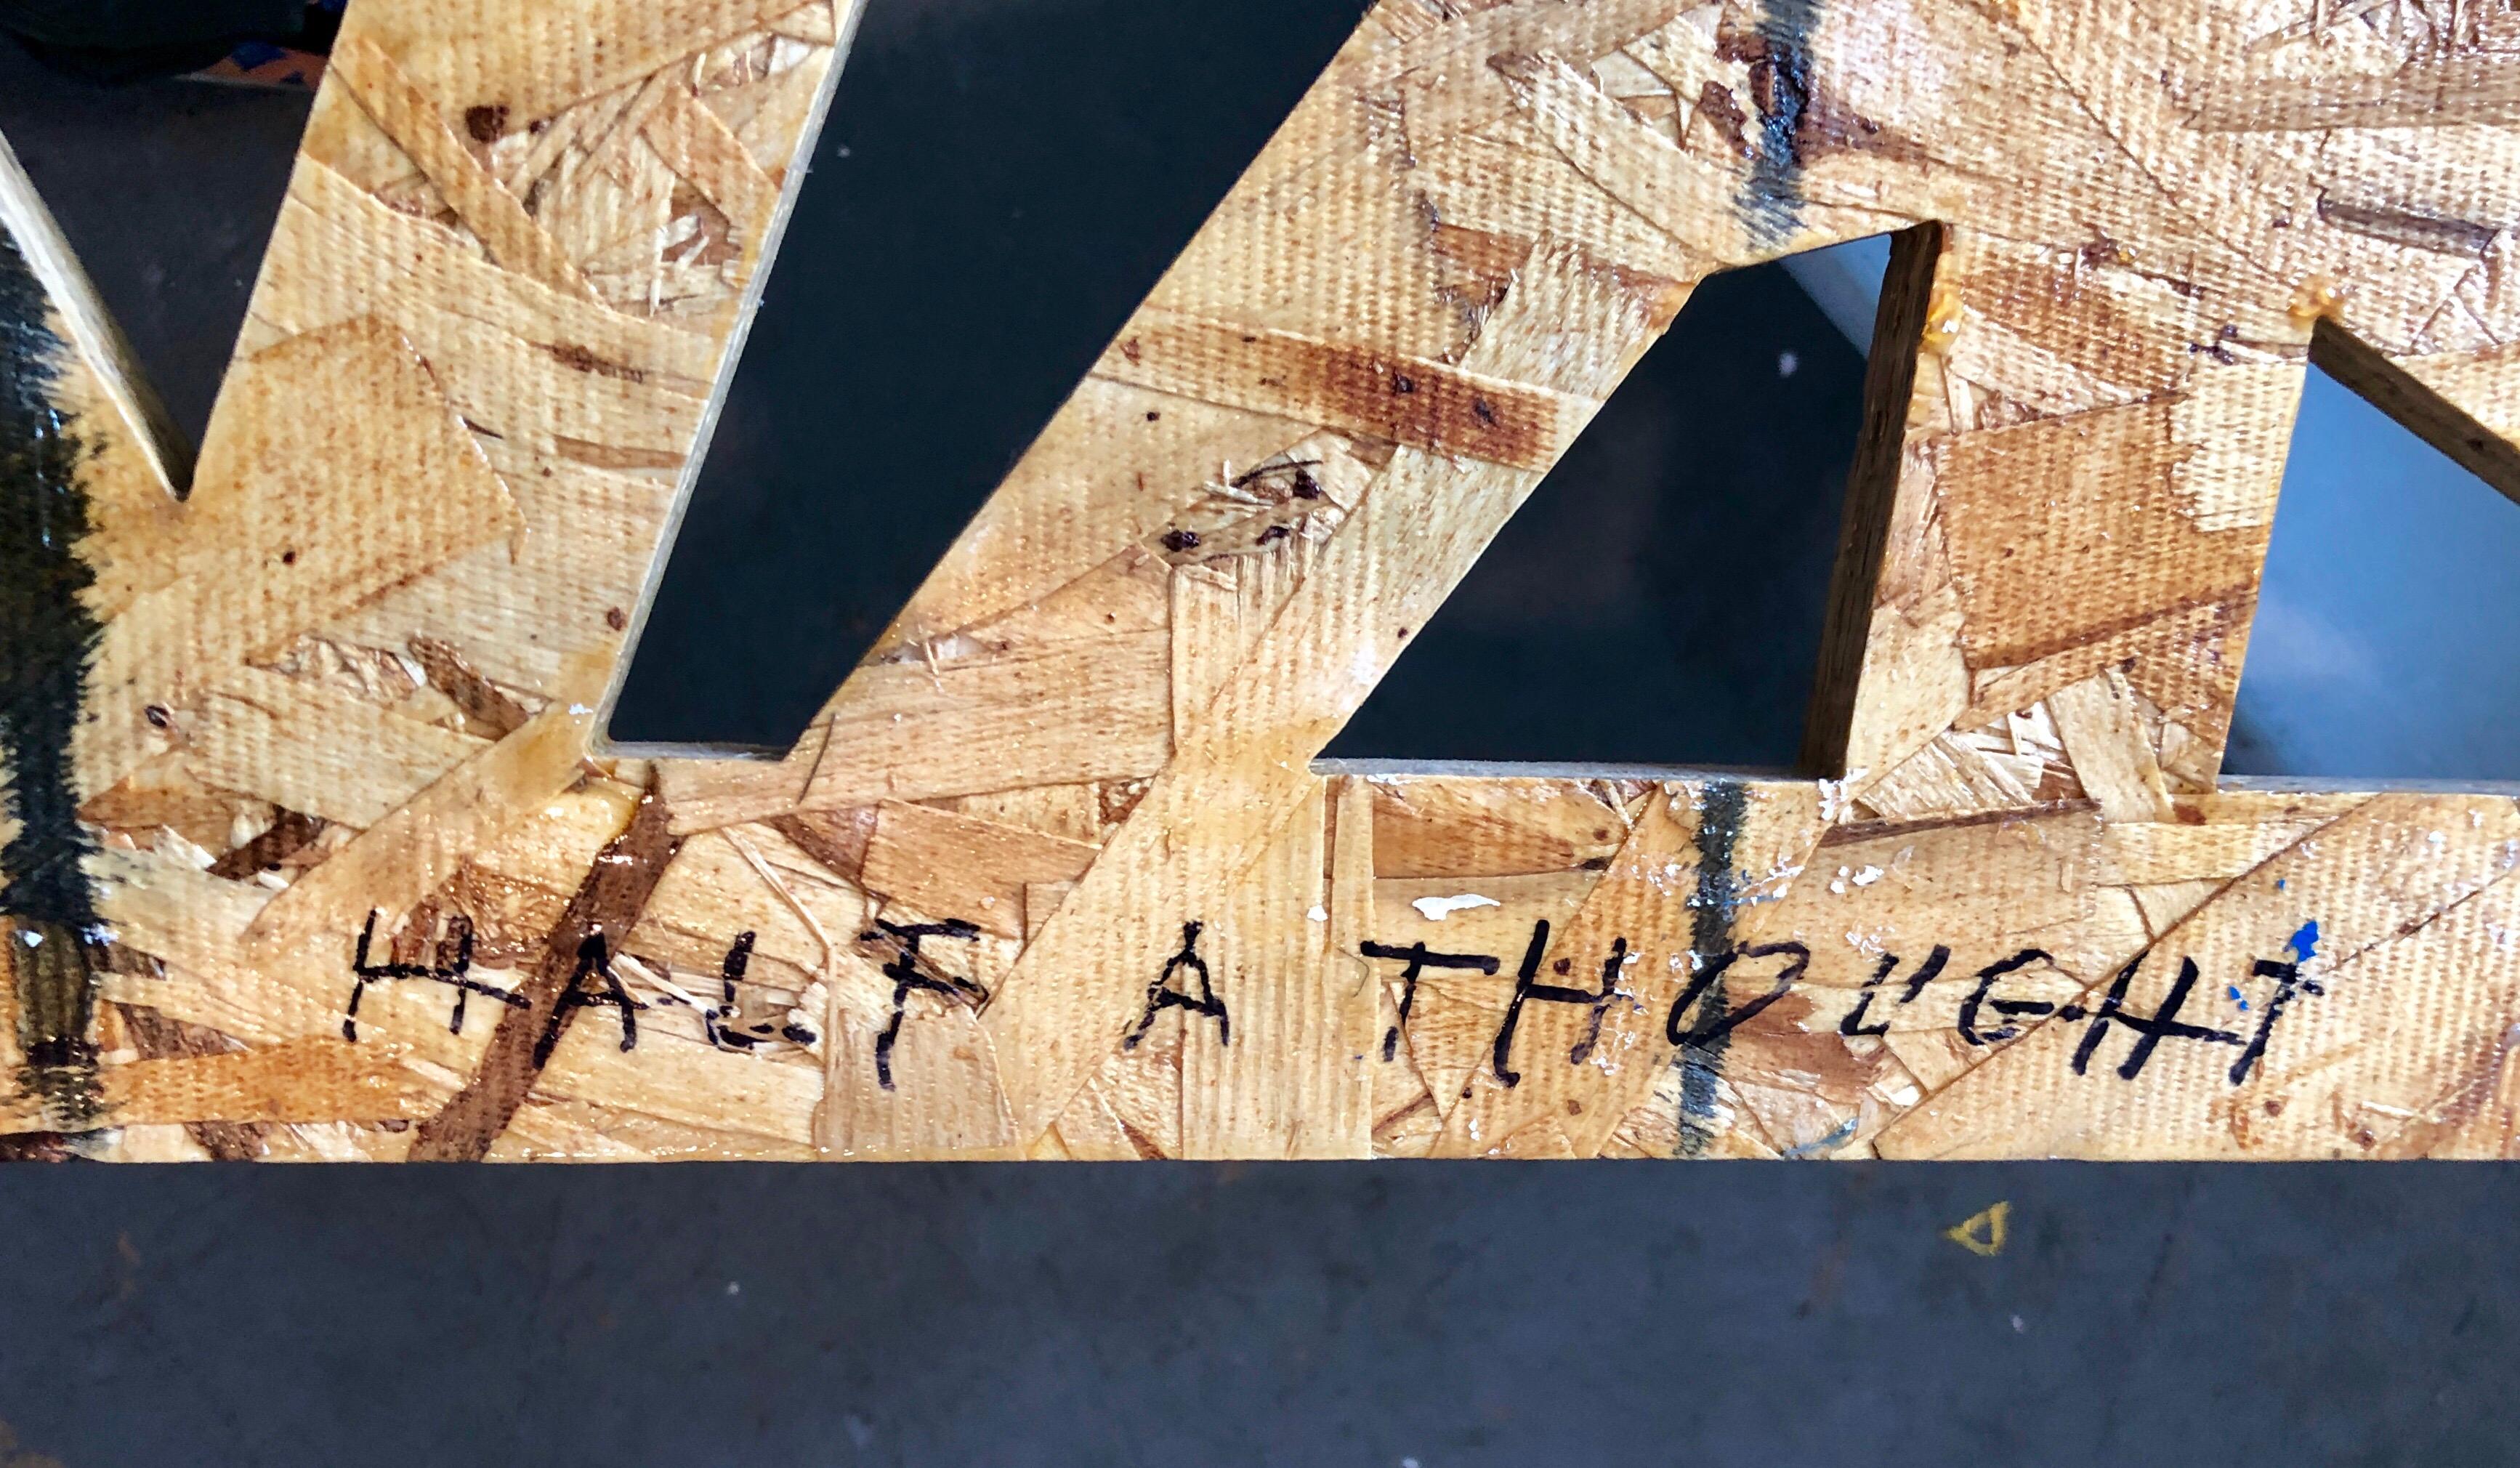 Ölbasierter Alkydharzlack auf Sperrholzplatte mit Schnitten. Dies ist eine geschnittene Sperrholzwandreliefskulptur mit Farbe darauf. Dies hat eine architektonische Qualität. 

Peter Wegner (geboren 1963) ist ein amerikanischer Künstler, dessen